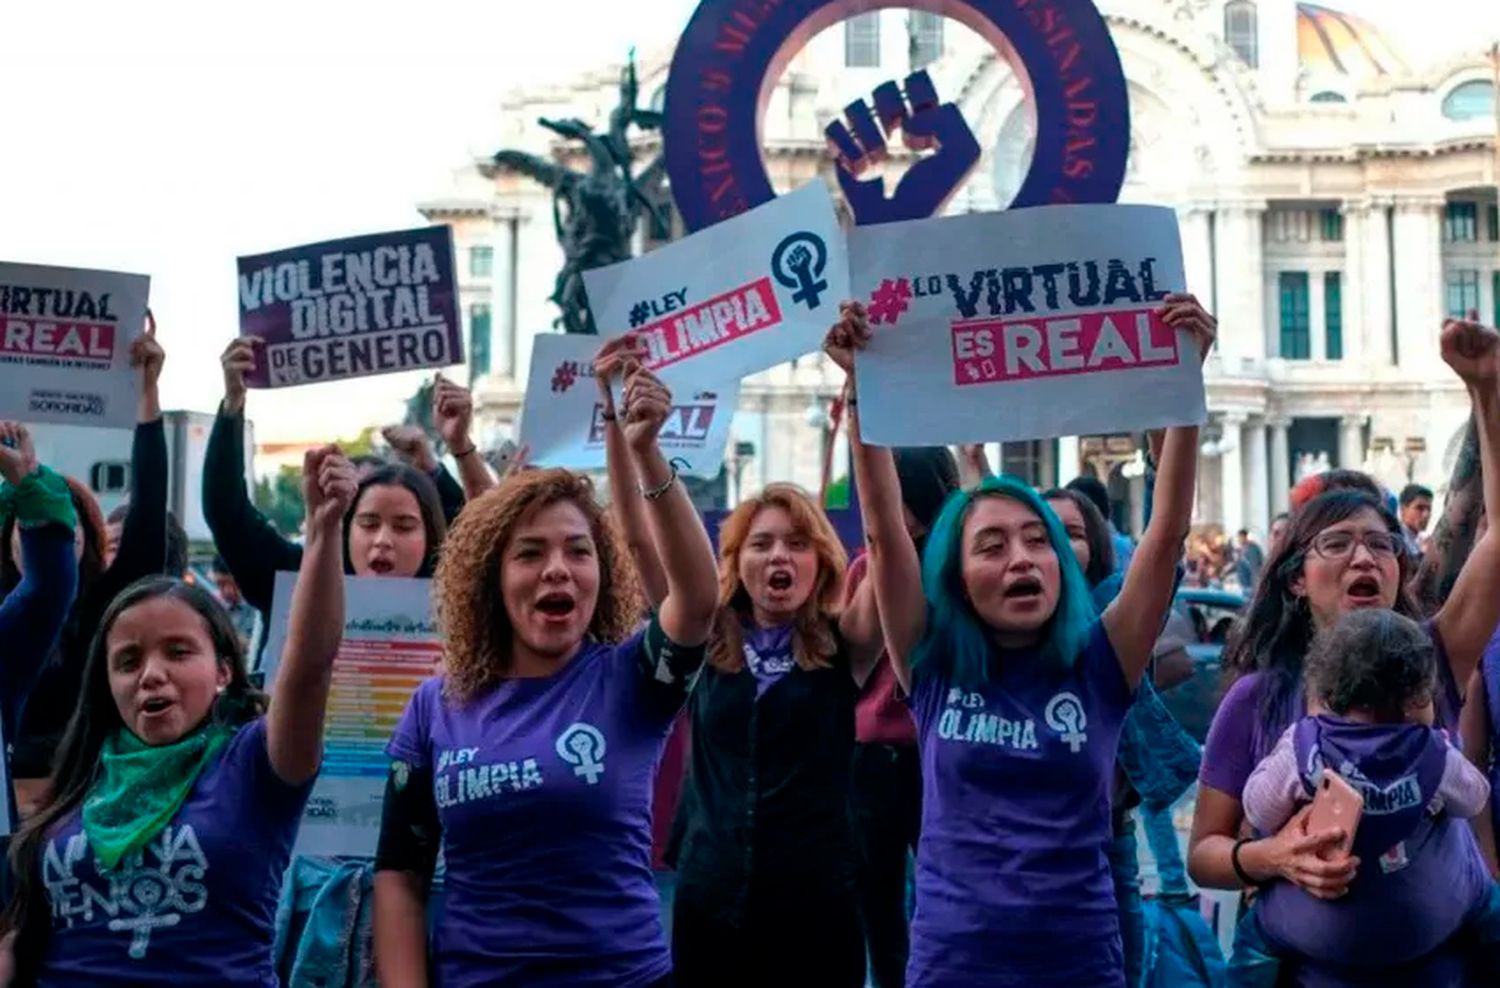 La violencia digital contra las mujeres pierde terreno gracias a la Ley Olimpia